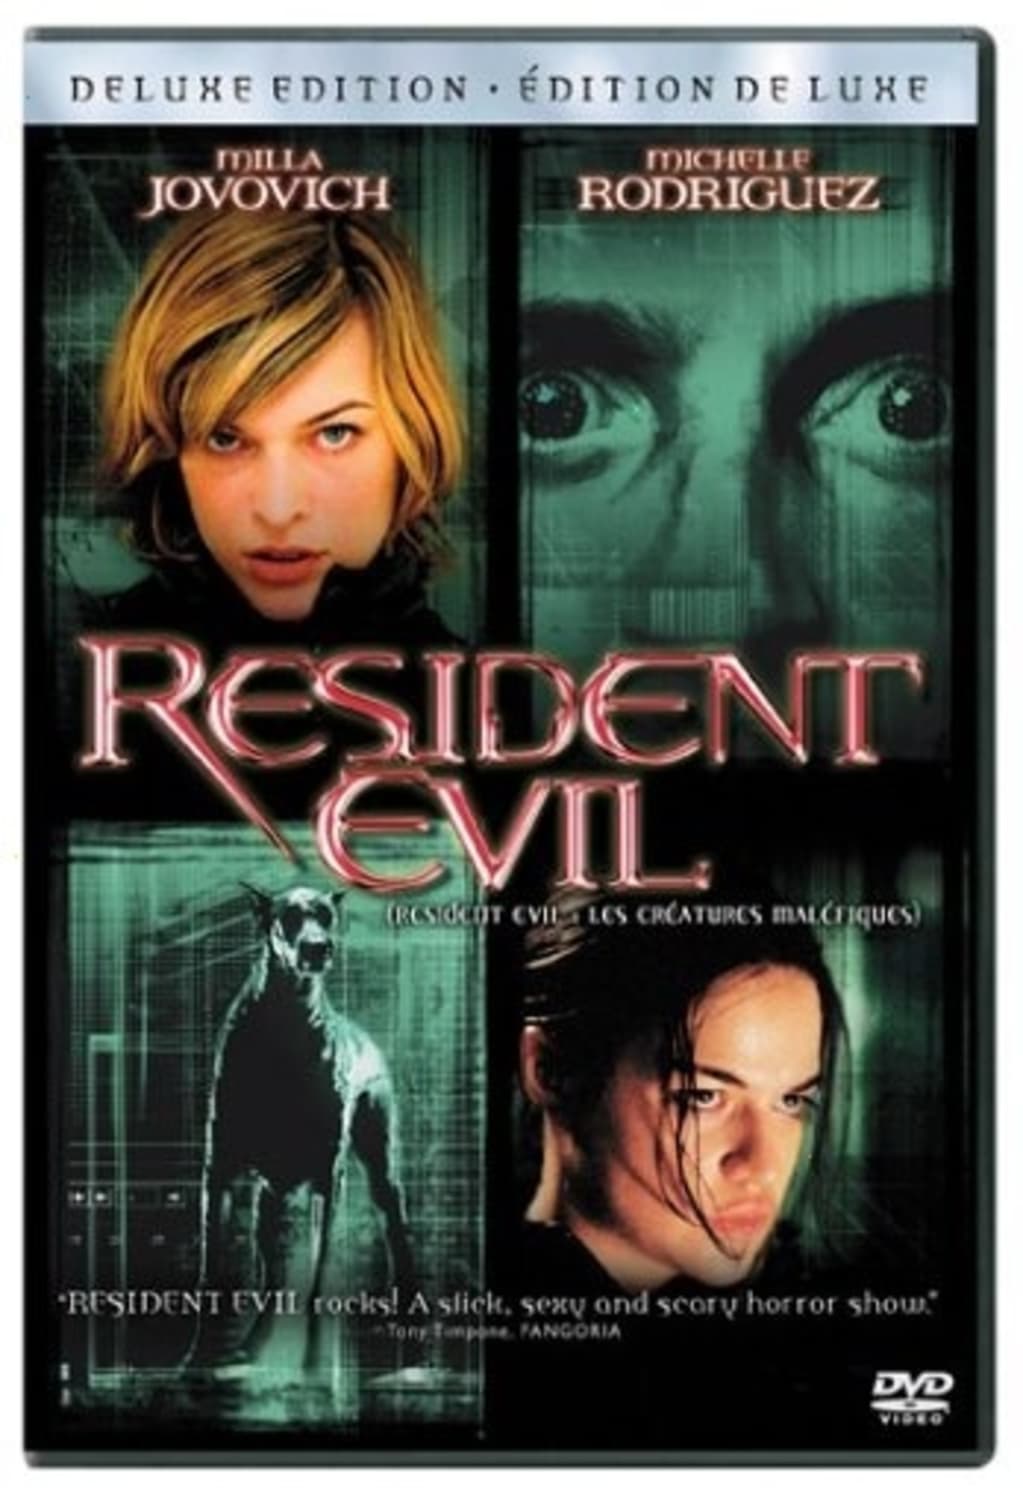 Resident Evil (DVD) on MovieShack